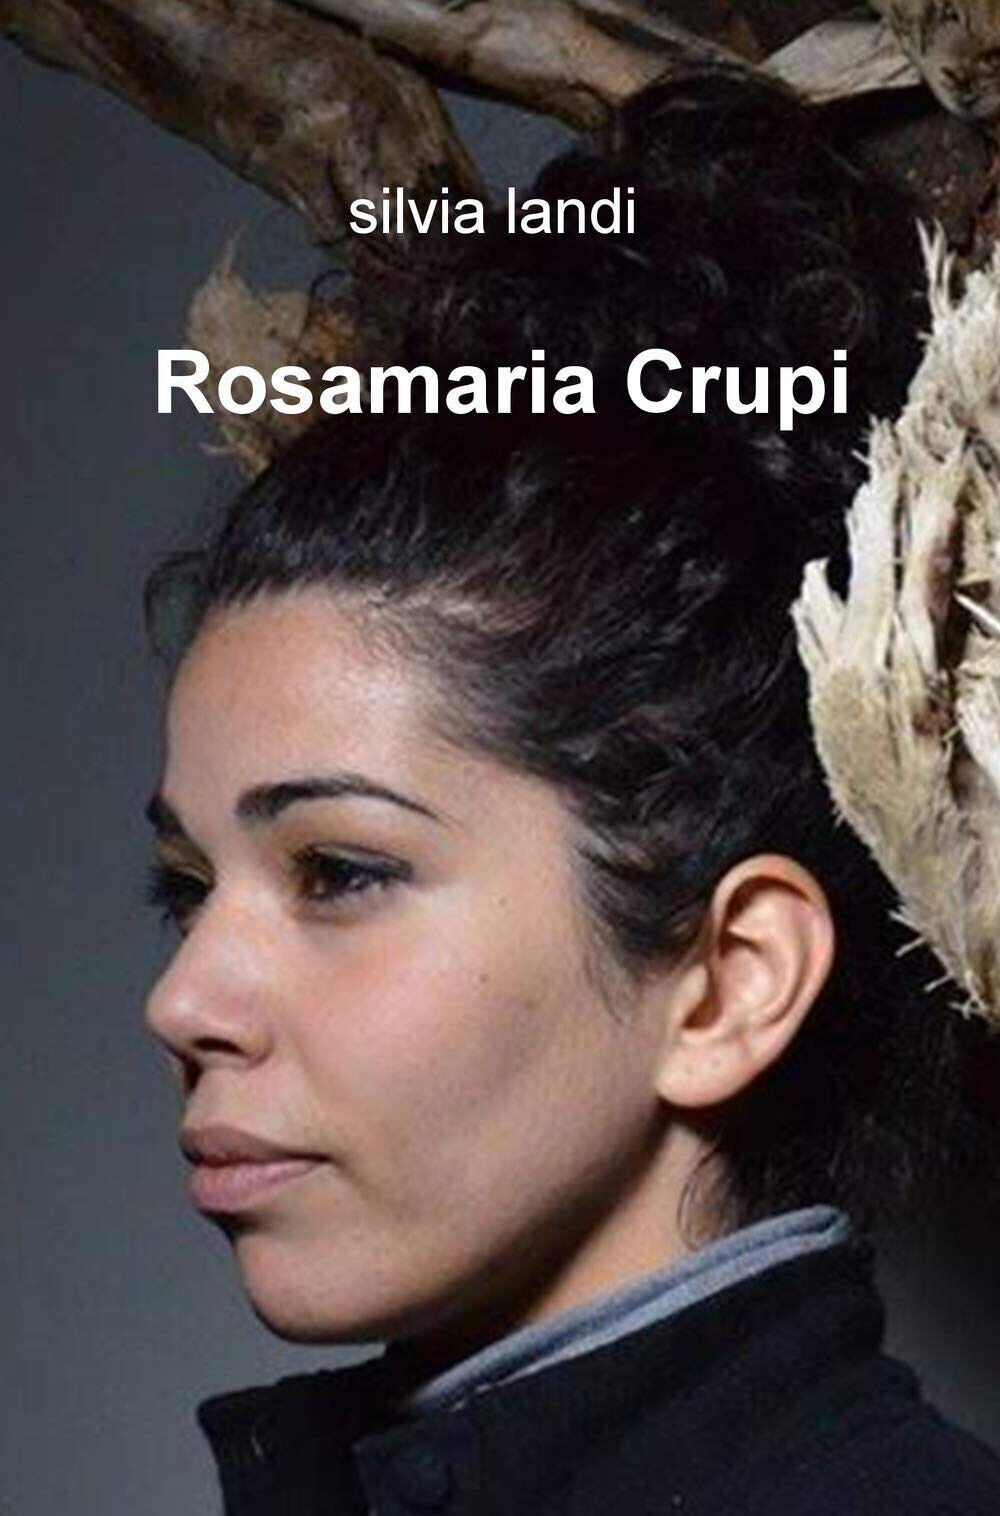 Rosamaria Crupi - Silvia Landi - ilmiolibro, 2019